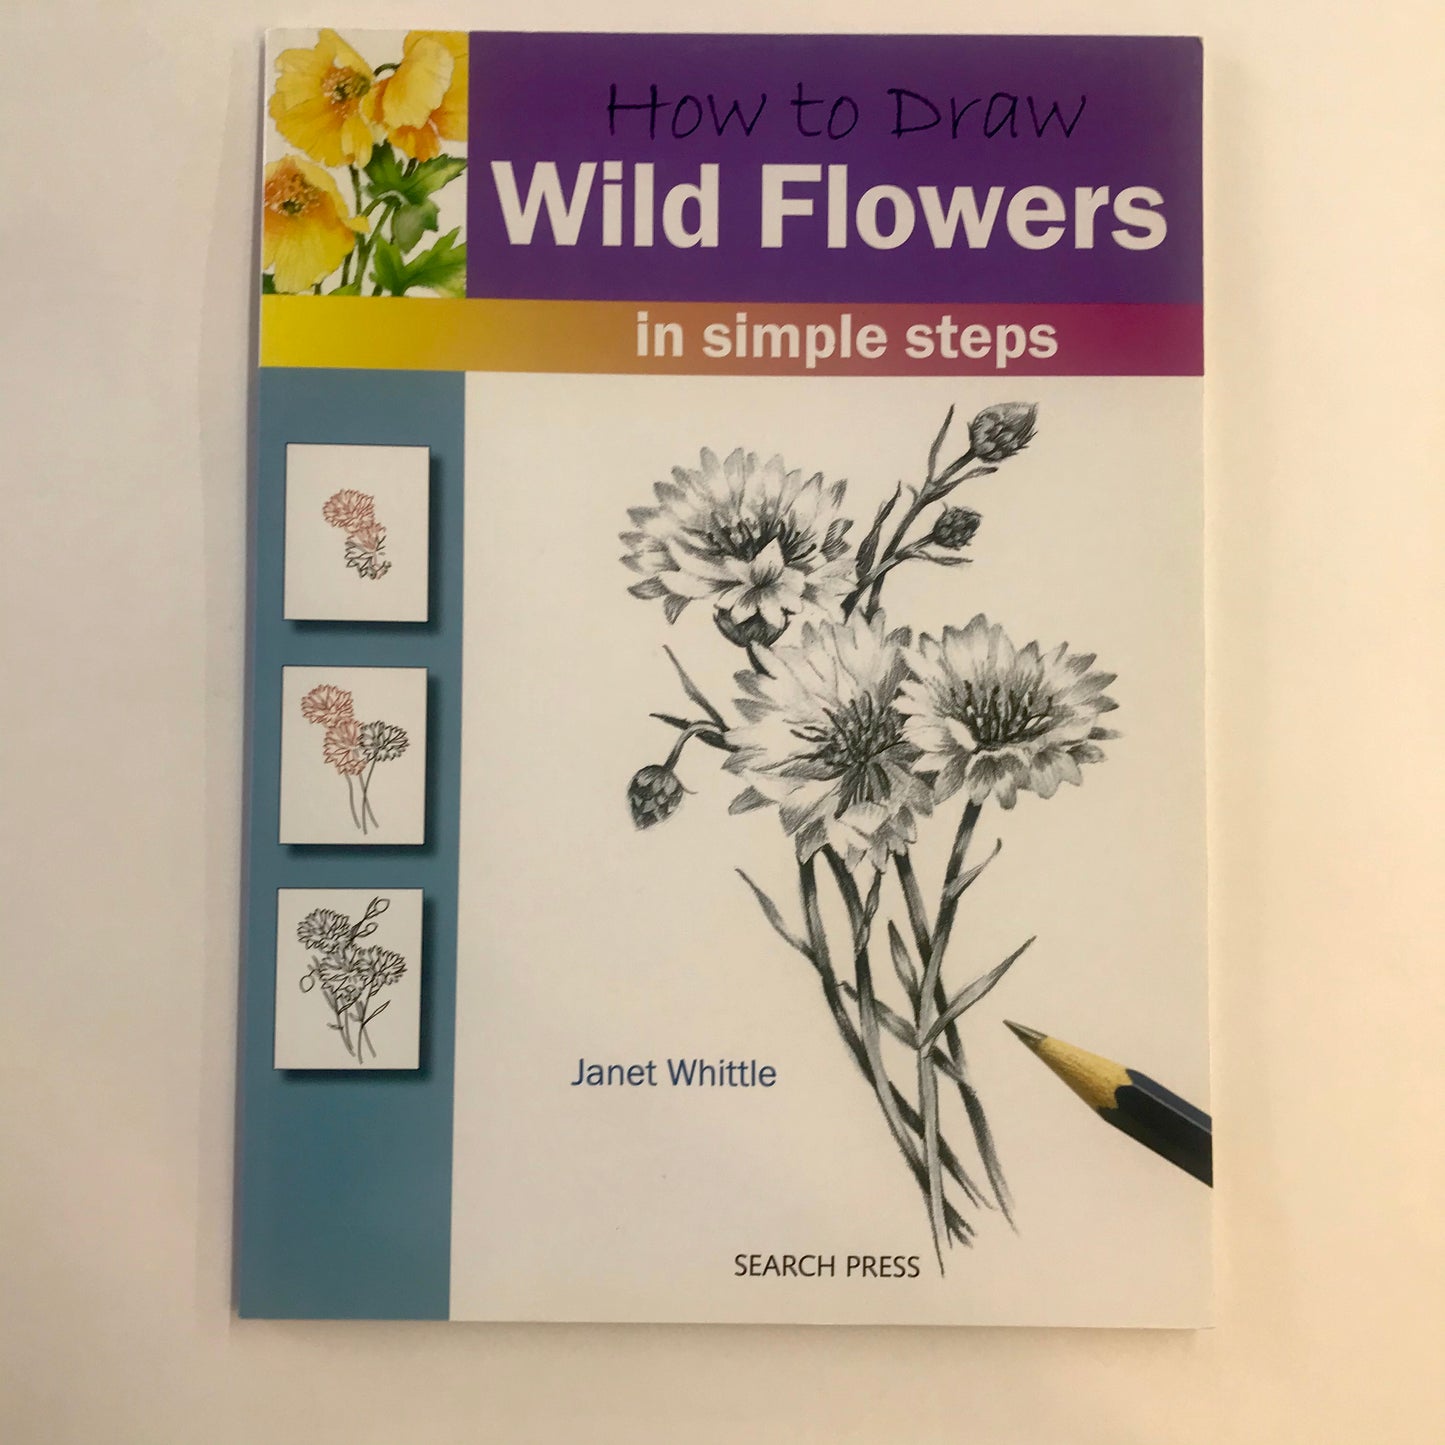 How to Draw Wild Flowers